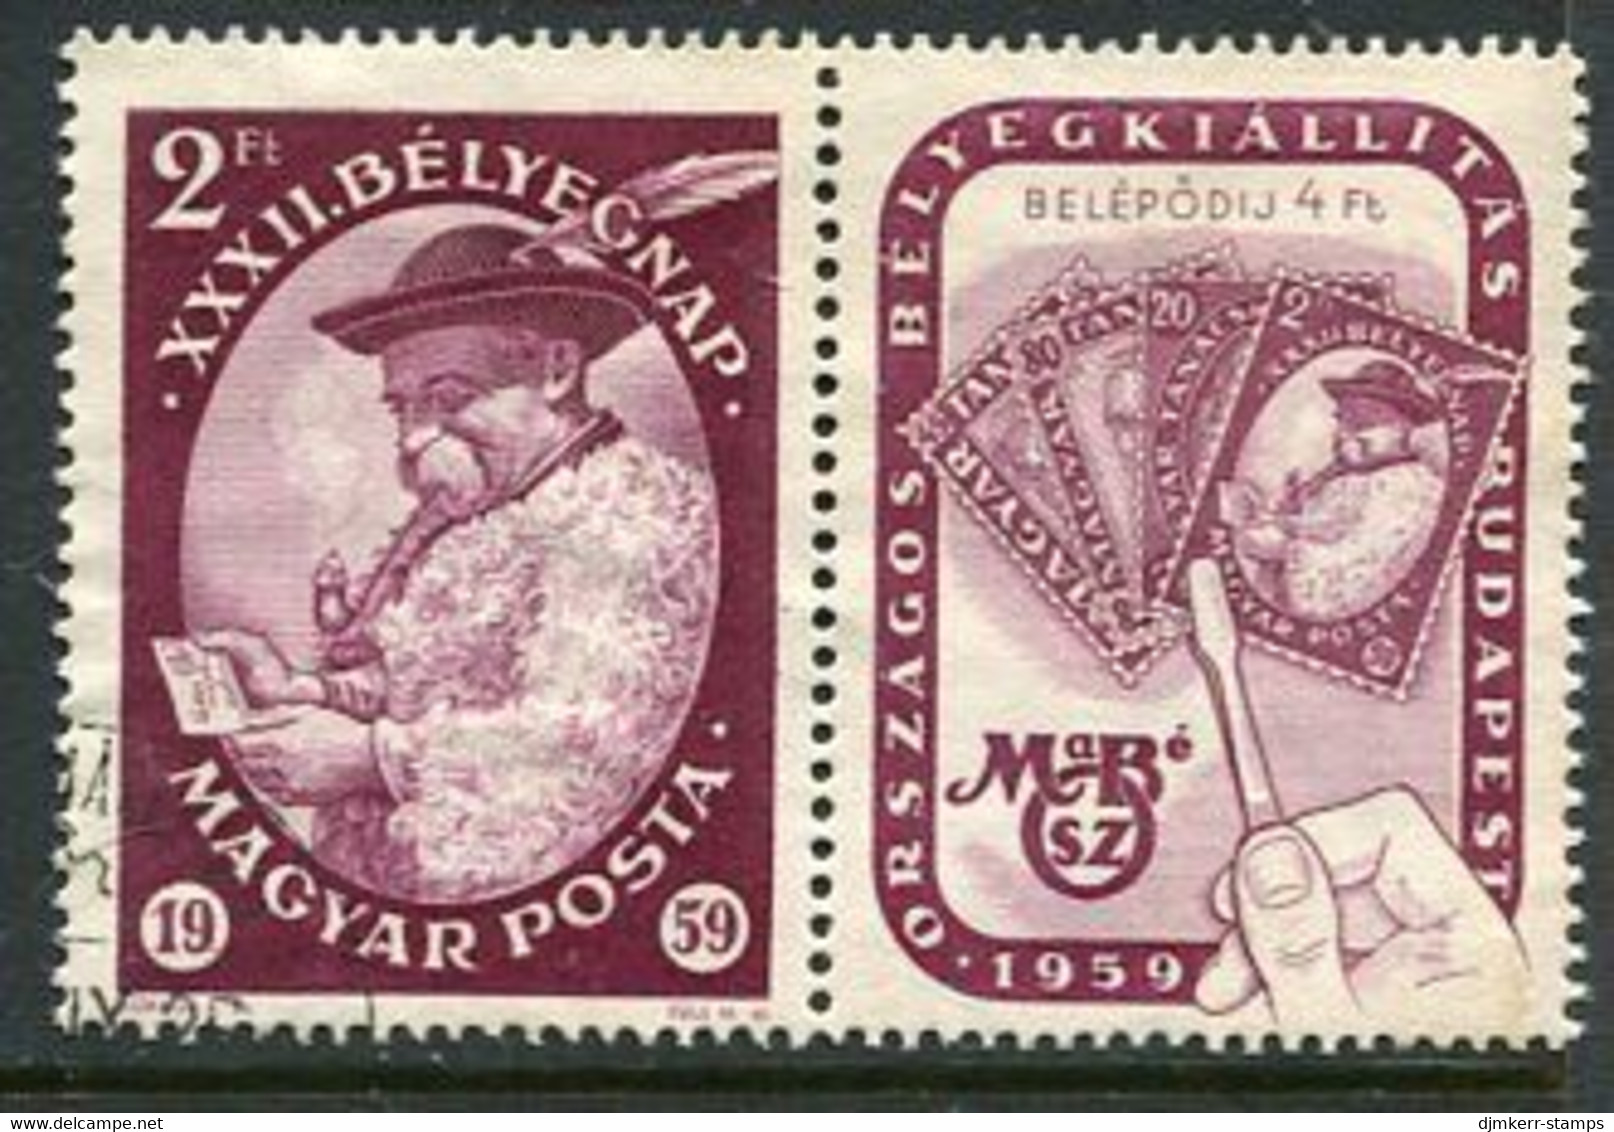 HUNGARY 1959 Stamp Day Used.  Michel; 1627 - Gebruikt